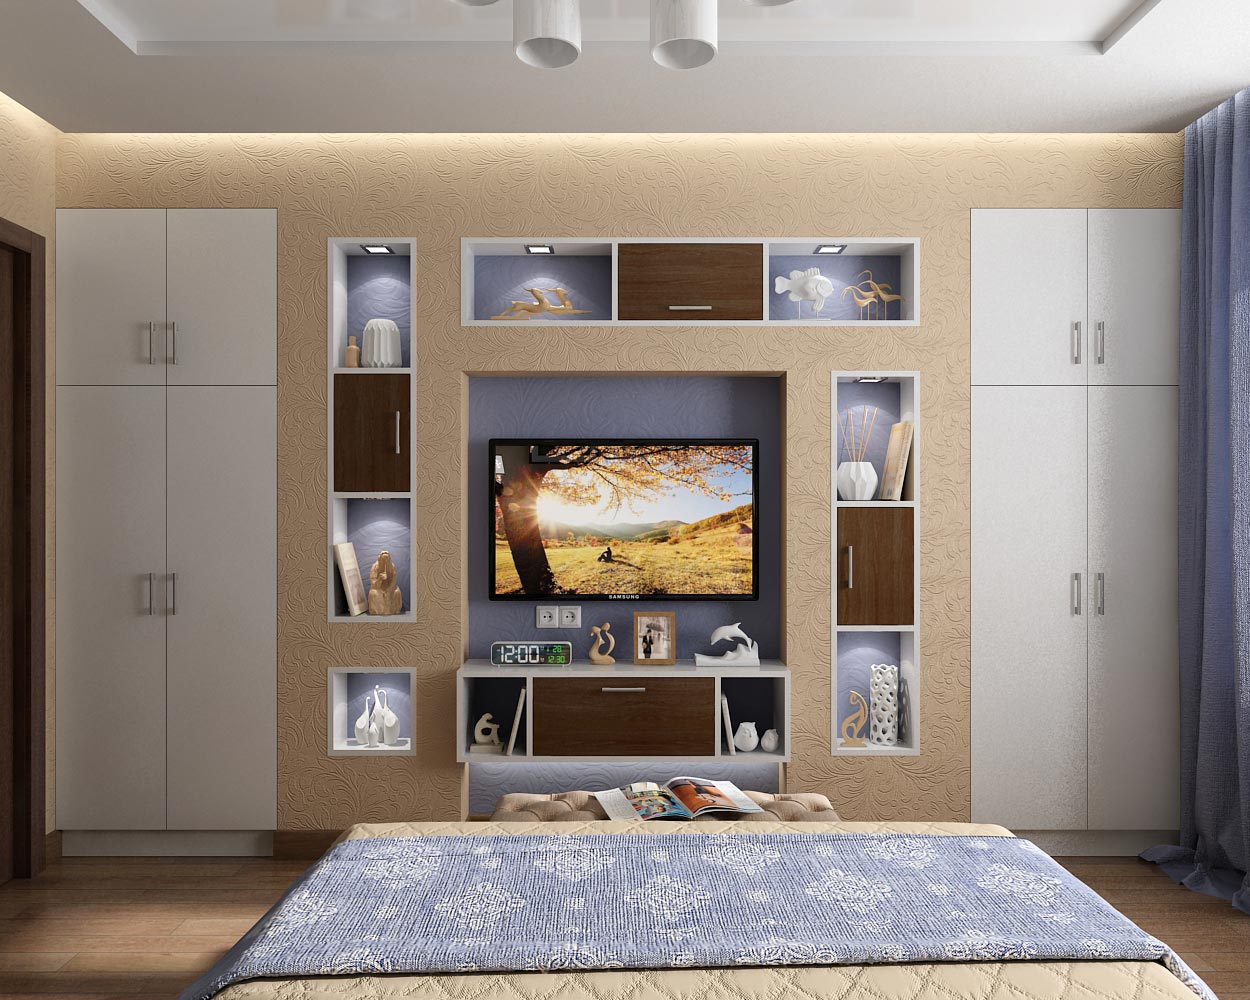 Проект дизайн интерьера спальни в квартире в Чернигове в 3d max vray 1.5 изображение